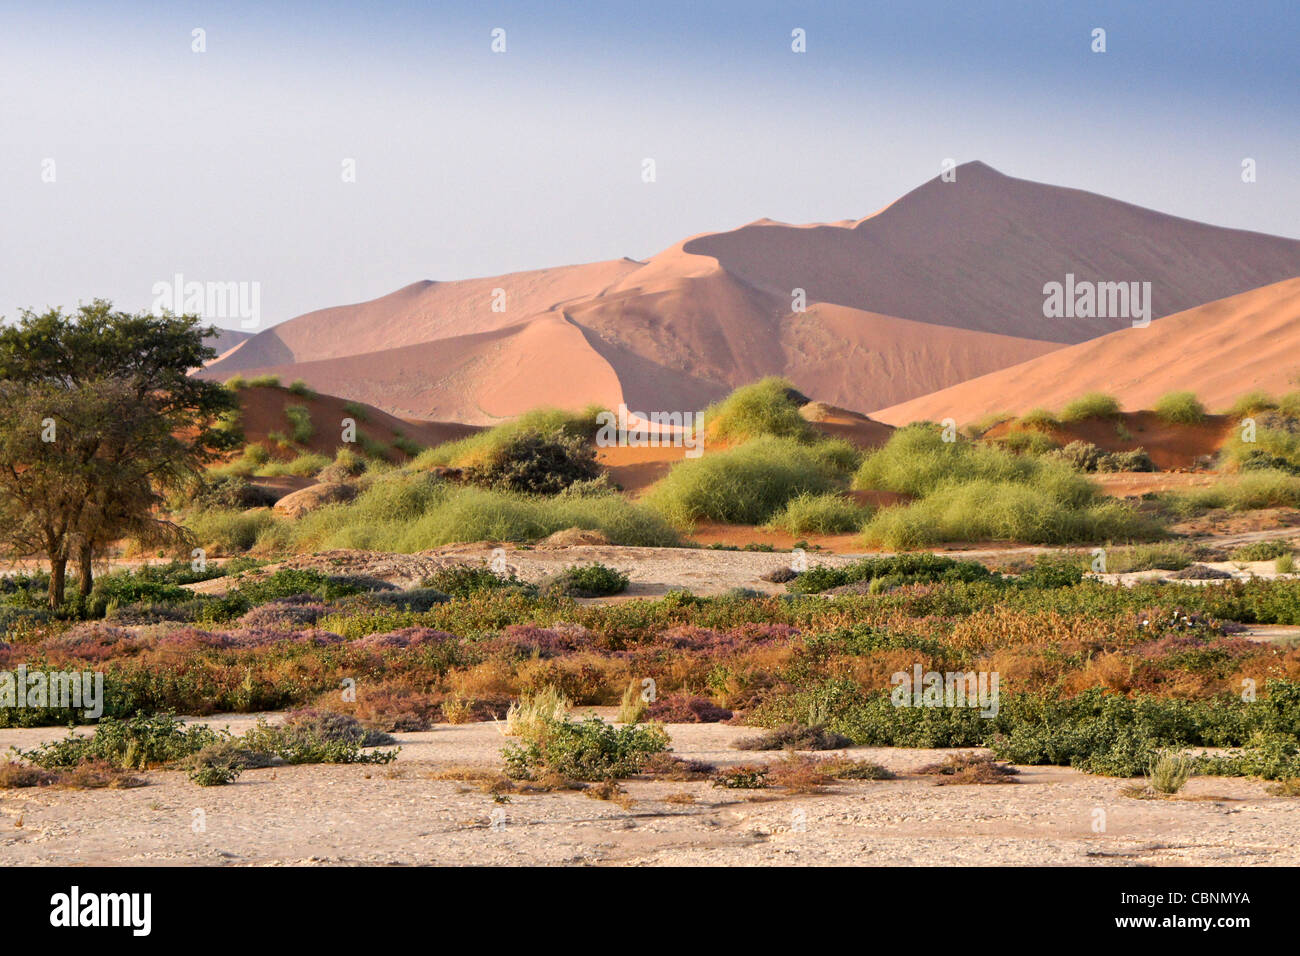 Dunes de sable et de fleurs sauvages à Sossusvlei, Namib-Naukluft Park, Namibie Banque D'Images